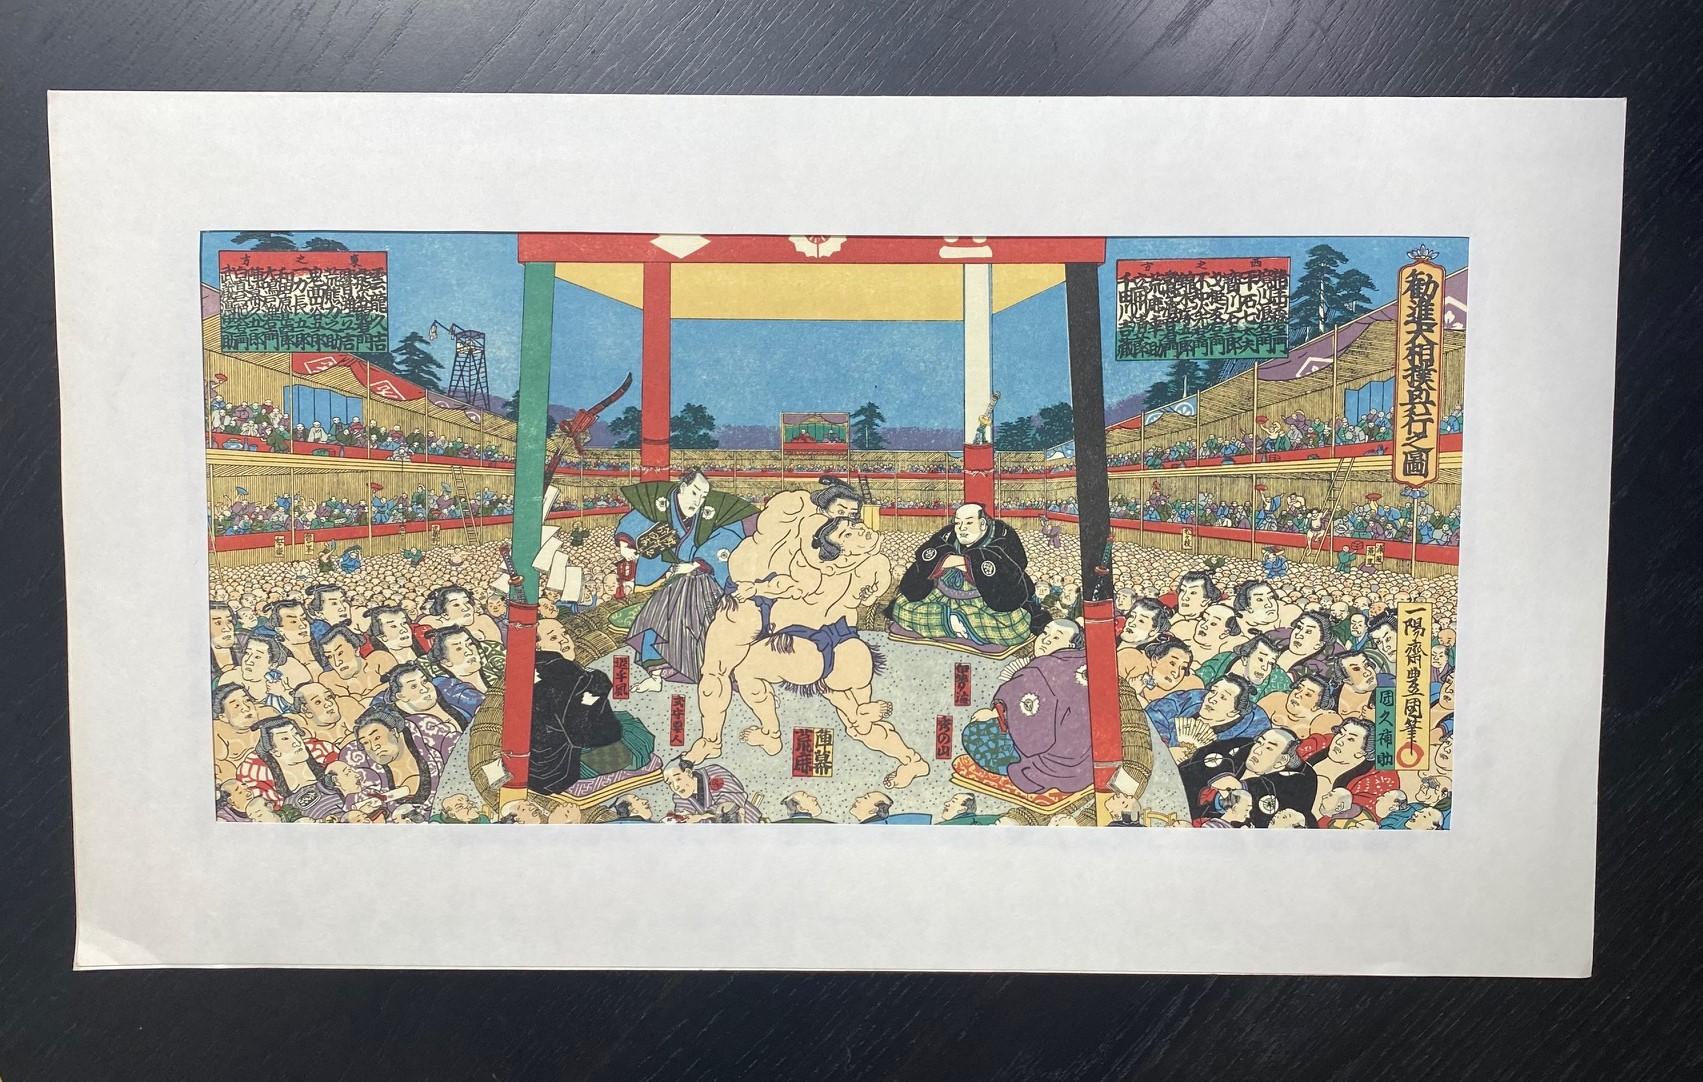 Ein wunderschön komponierter und reich kolorierter Farbholzschnitt des berühmten japanischen Künstlers Tokoyuni III (auch bekannt als Utagawa Kunisada 1786-1864 und hier als 